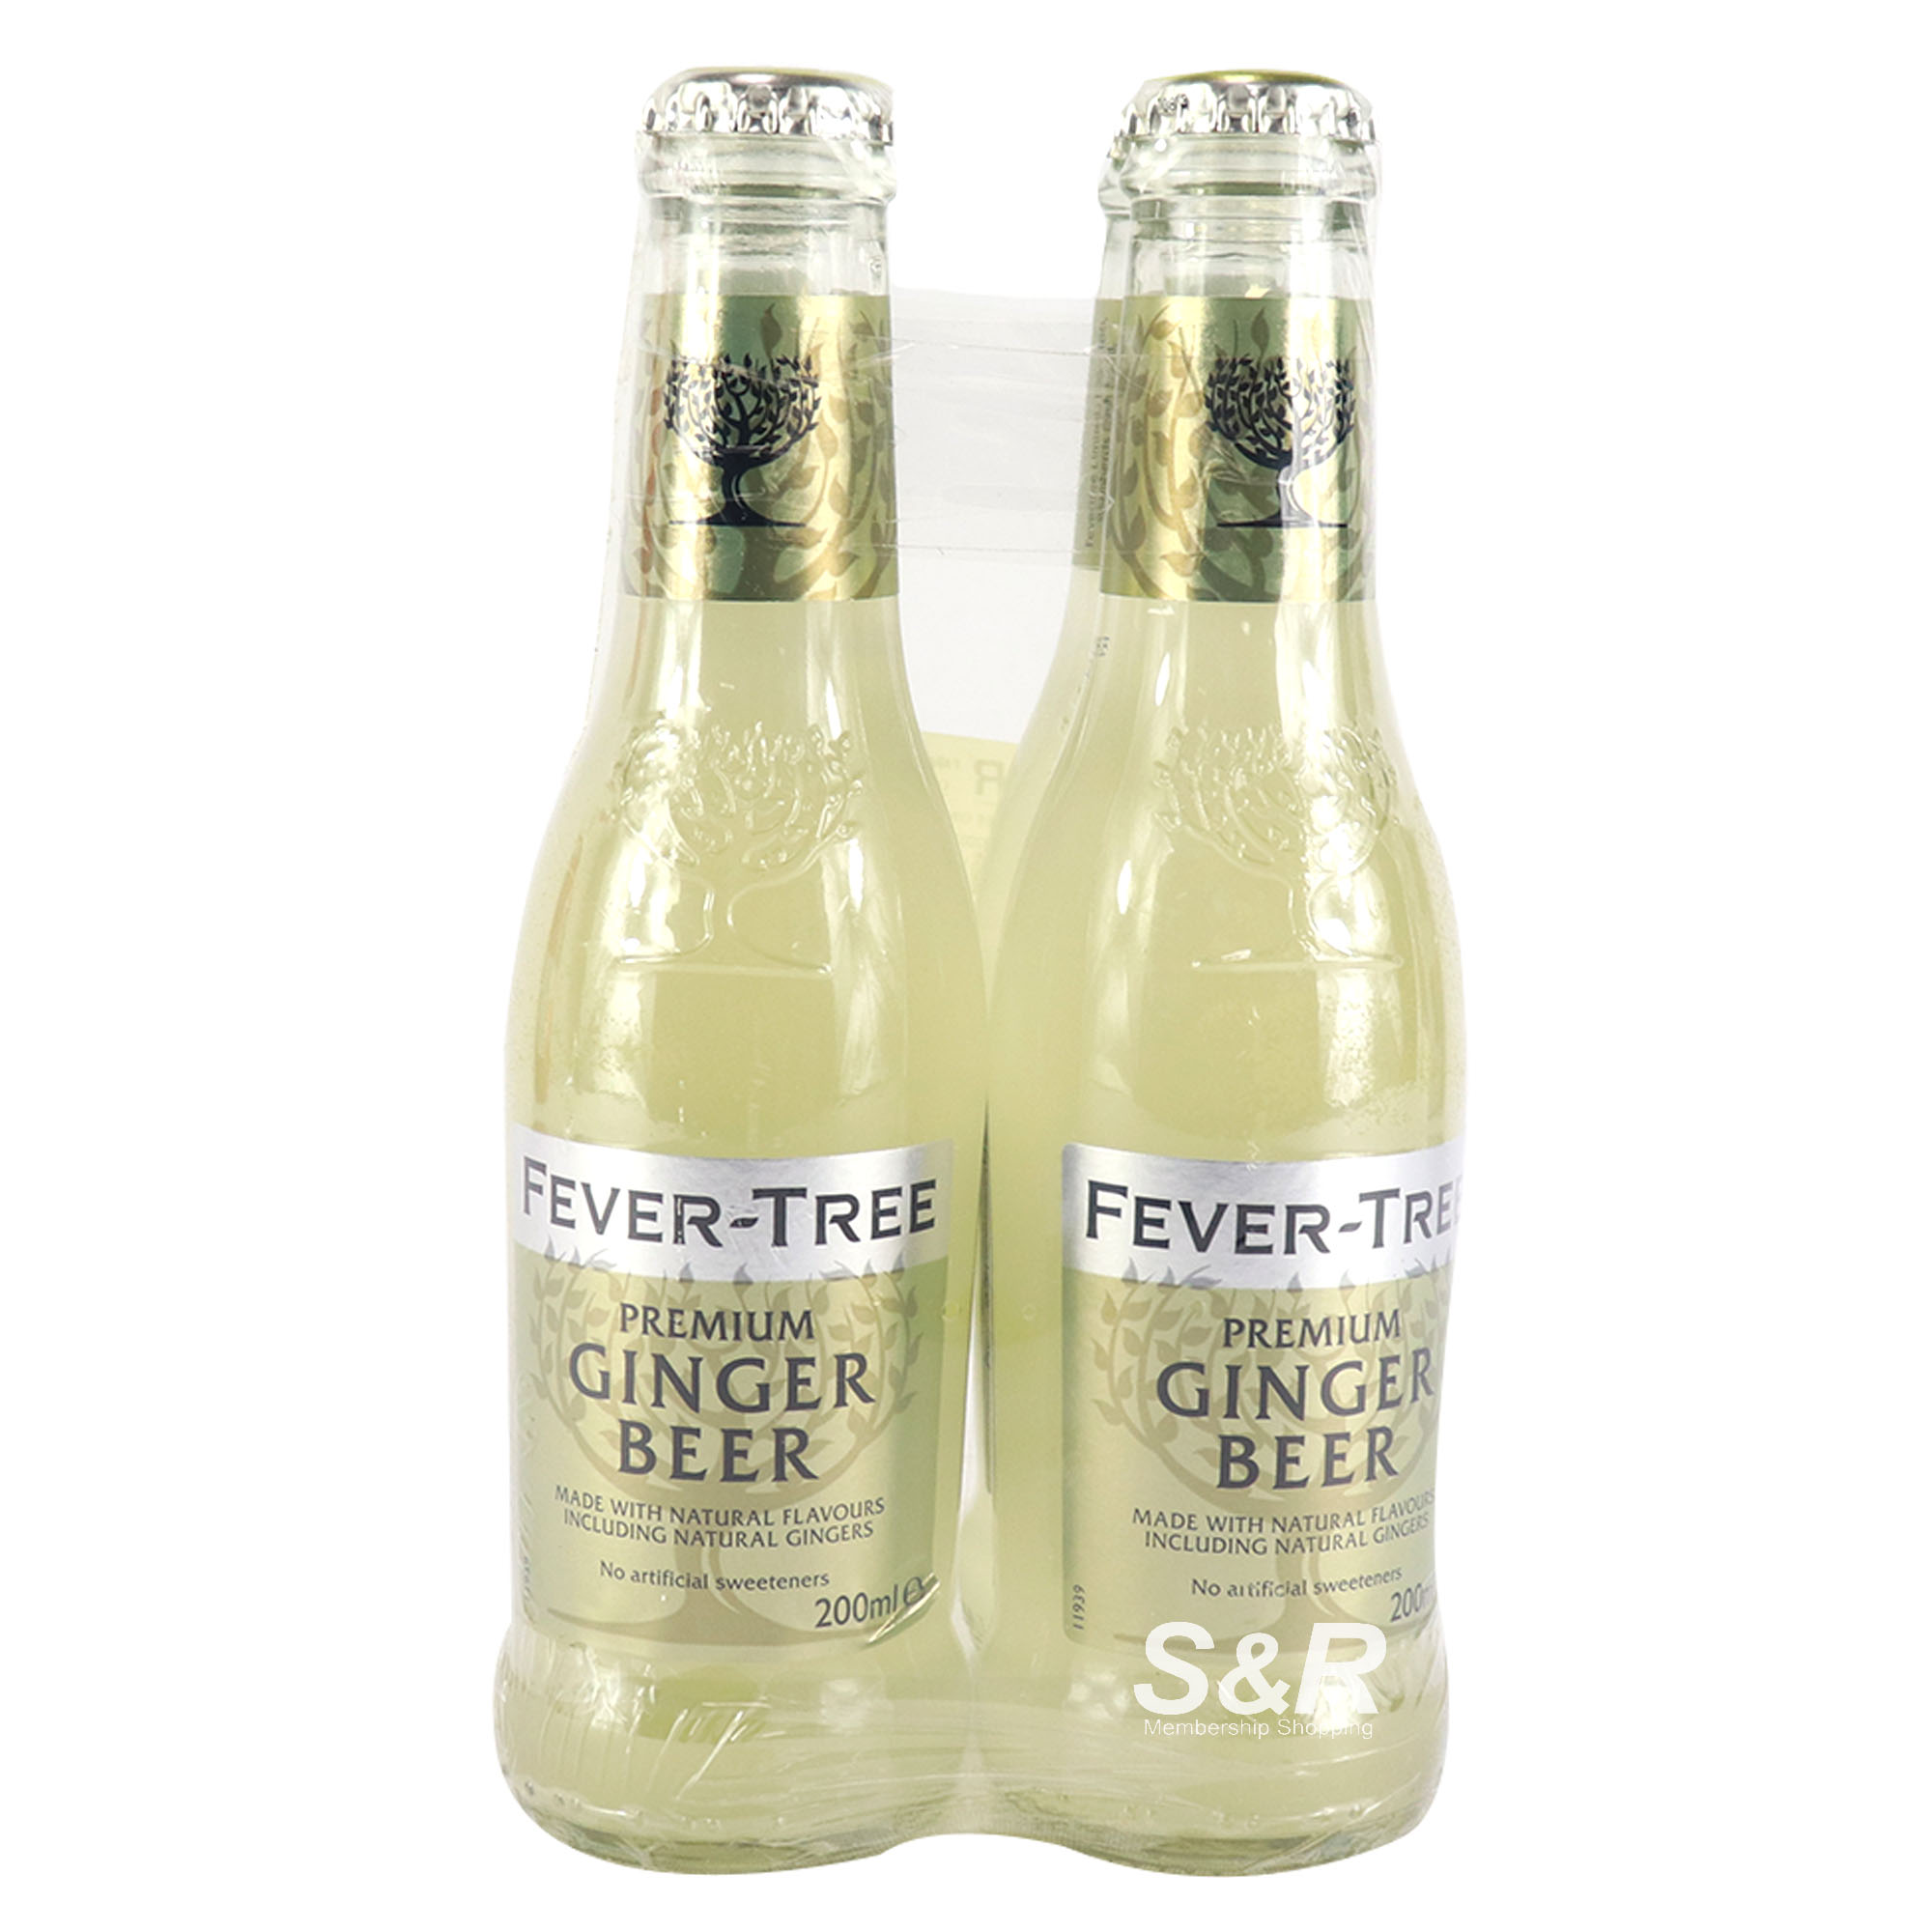 Fever-Tree Premium Ginger Beer 4 bottles